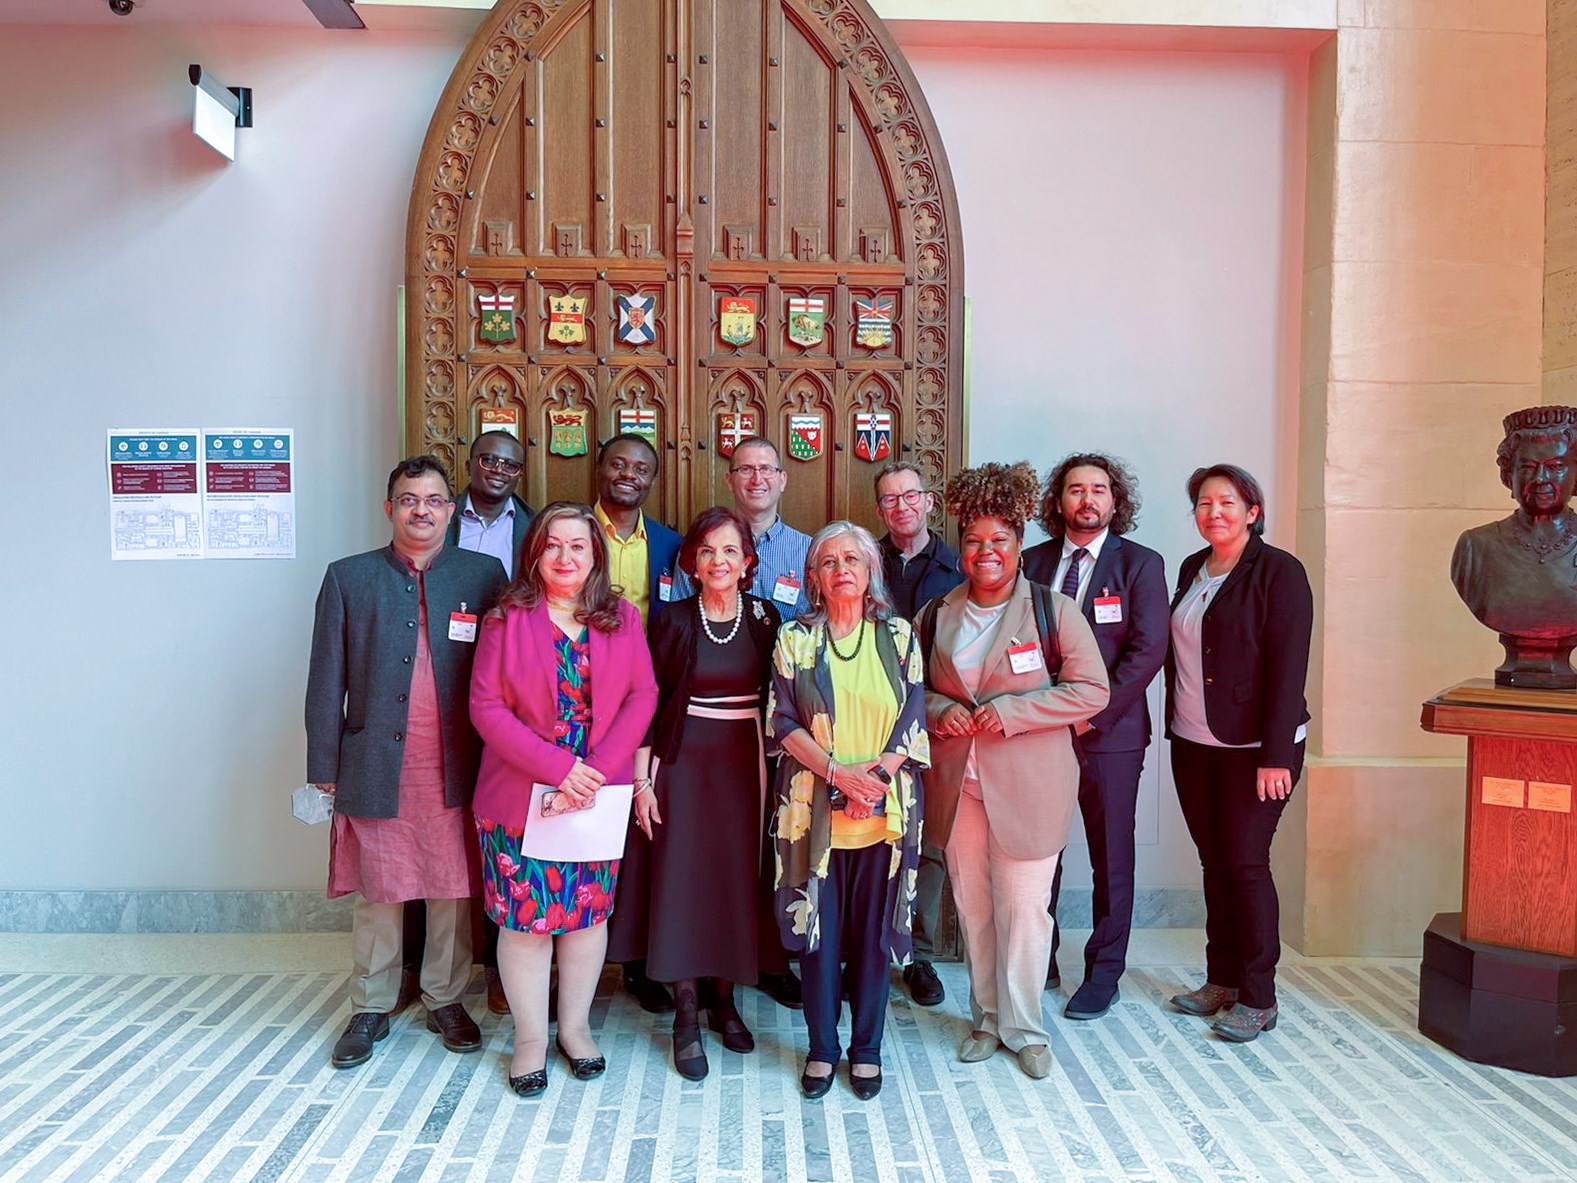 Le mercredi 11 mai 2022 — Les sénatrices Salma Ataullahjan, Mobina S. B. Jaffer et Ratna Omidvar (devant, à partir de la gauche, respectivement) accueillent les lauréats du Prix mondial du pluralisme 2021 au Sénat du Canada. La sénatrice Omidvar était membre du jury pour l’attribution de ce prix.